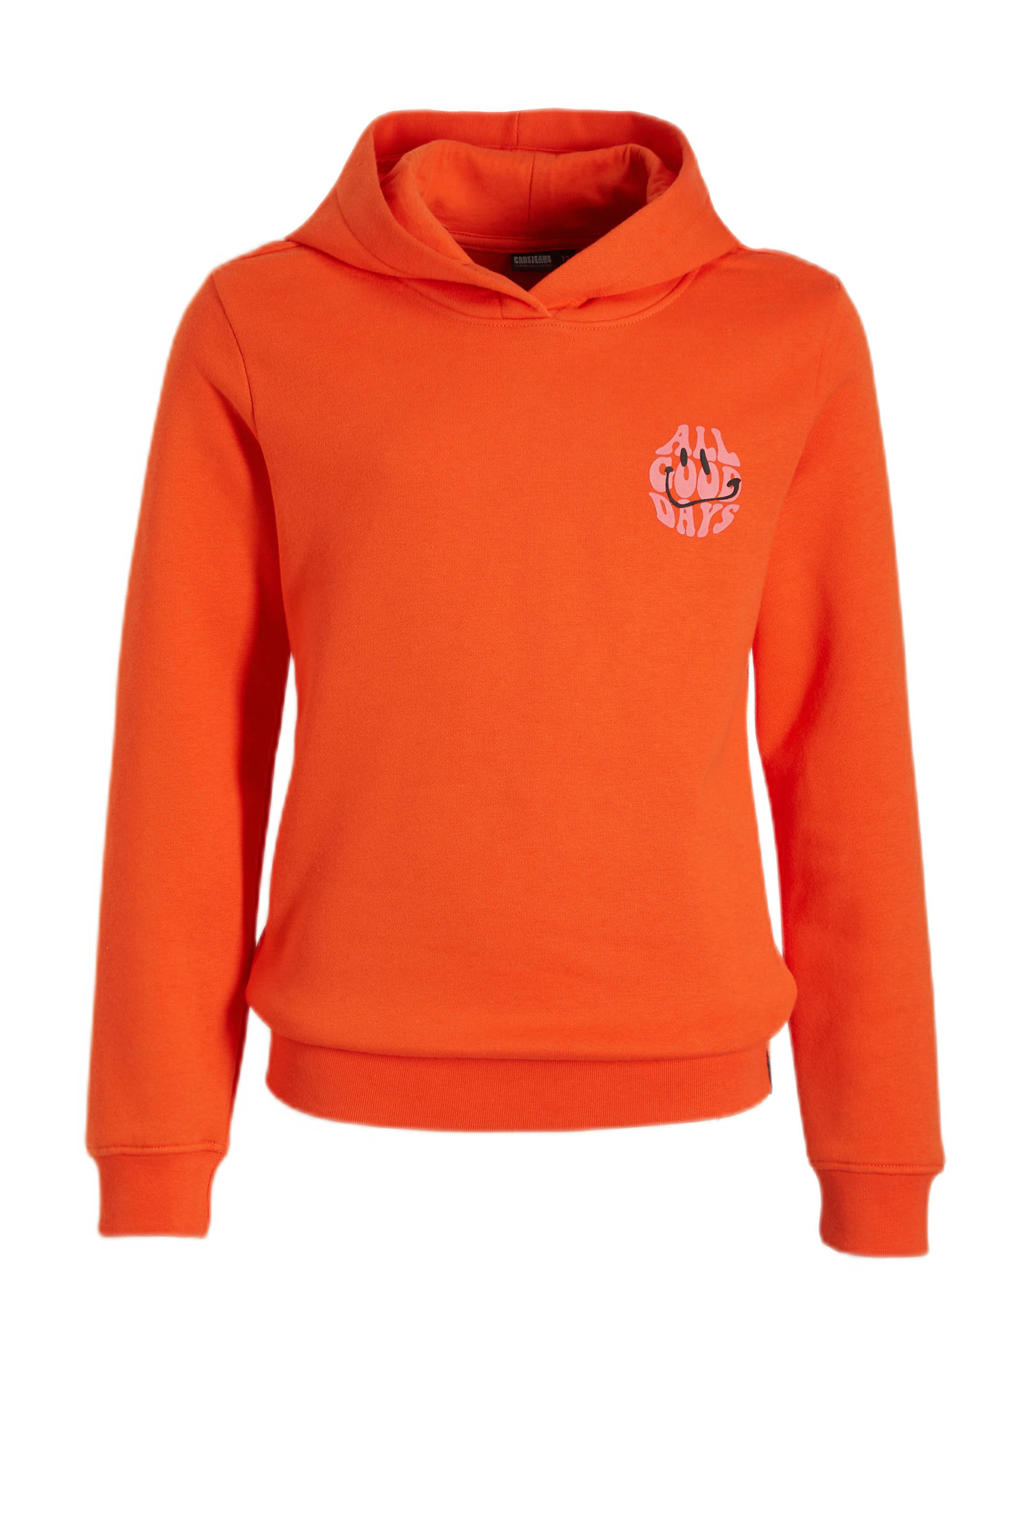 Oranje meisjes Cars hoodie van sweat materiaal met backprint, lange mouwen en capuchon